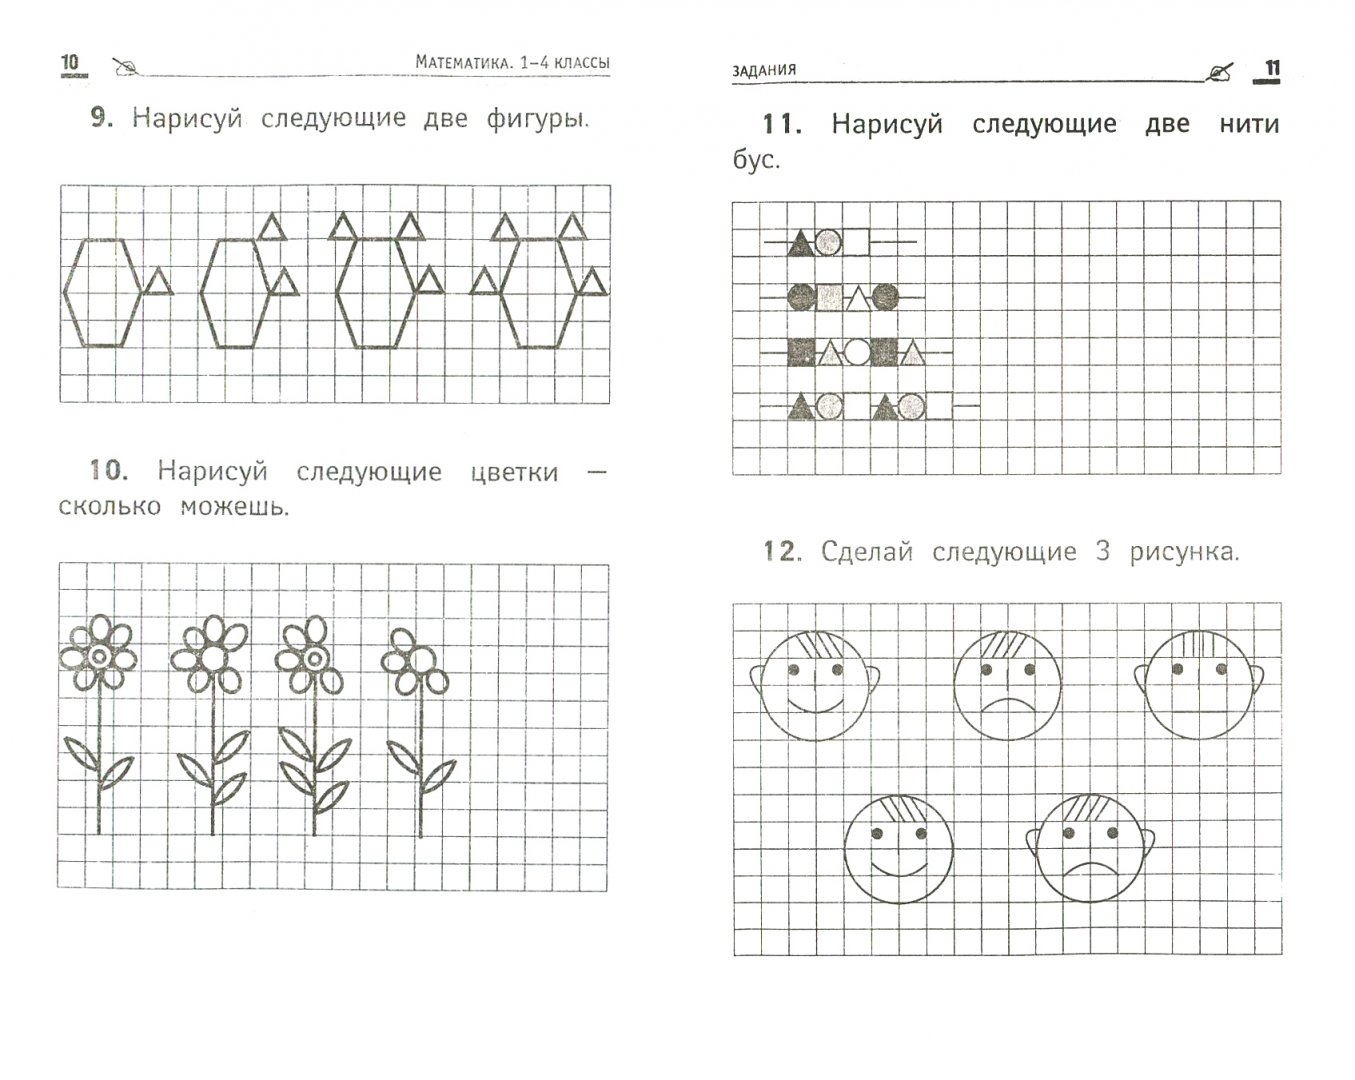 Иллюстрация 1 из 16 для Математика. 1-4 классы - Бененсон, Волков | Лабиринт - книги. Источник: Лабиринт